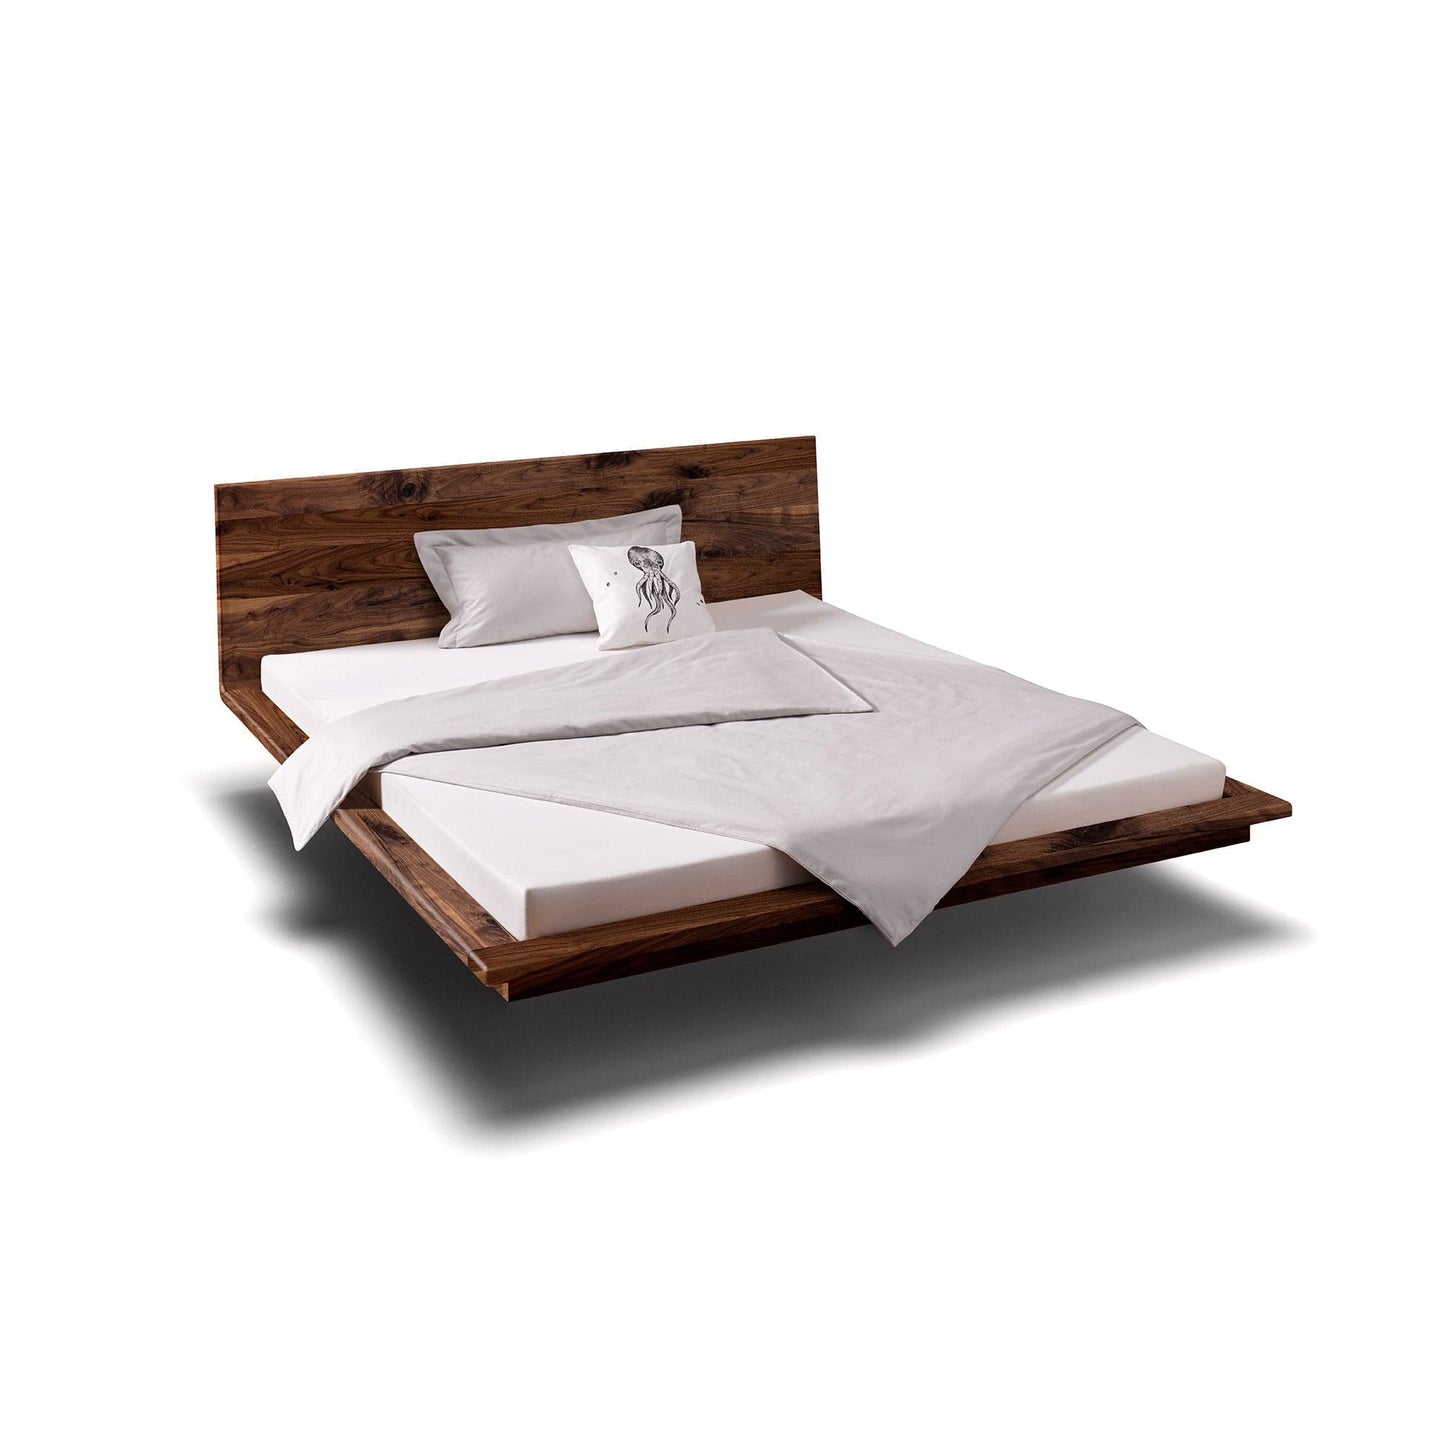 Holzmanufaktur Bett MATIS ist ein hochwertiges, schwebendes  Designerbett aus rustikaler Eiche.